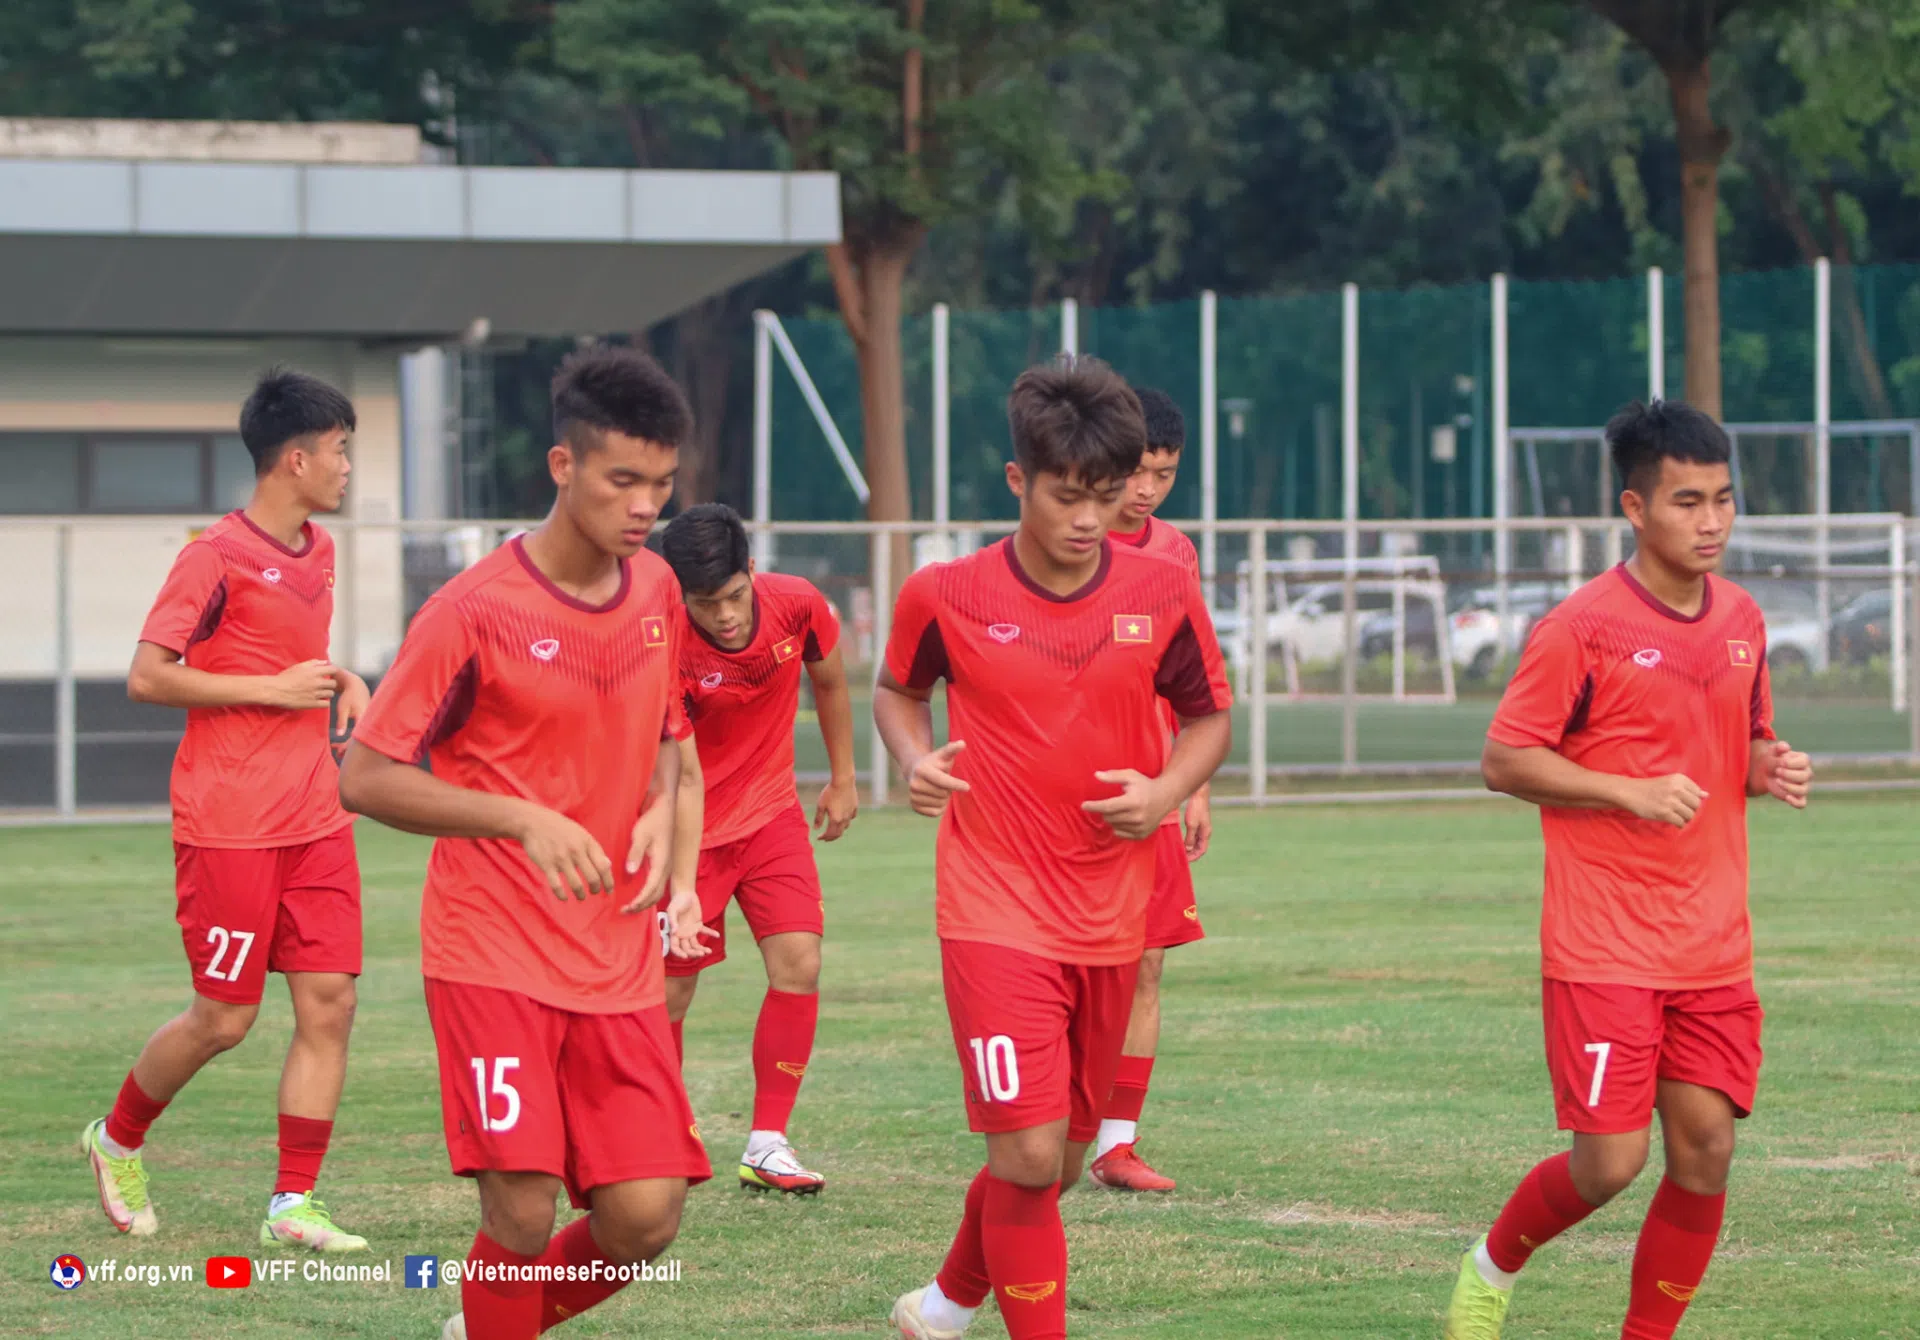 Trực tiếp U19 Việt Nam vs U19 Thái Lan link xem trực tiếp U19 Việt Nam vs U19 Thái Lan: 20h00 10/07/2022